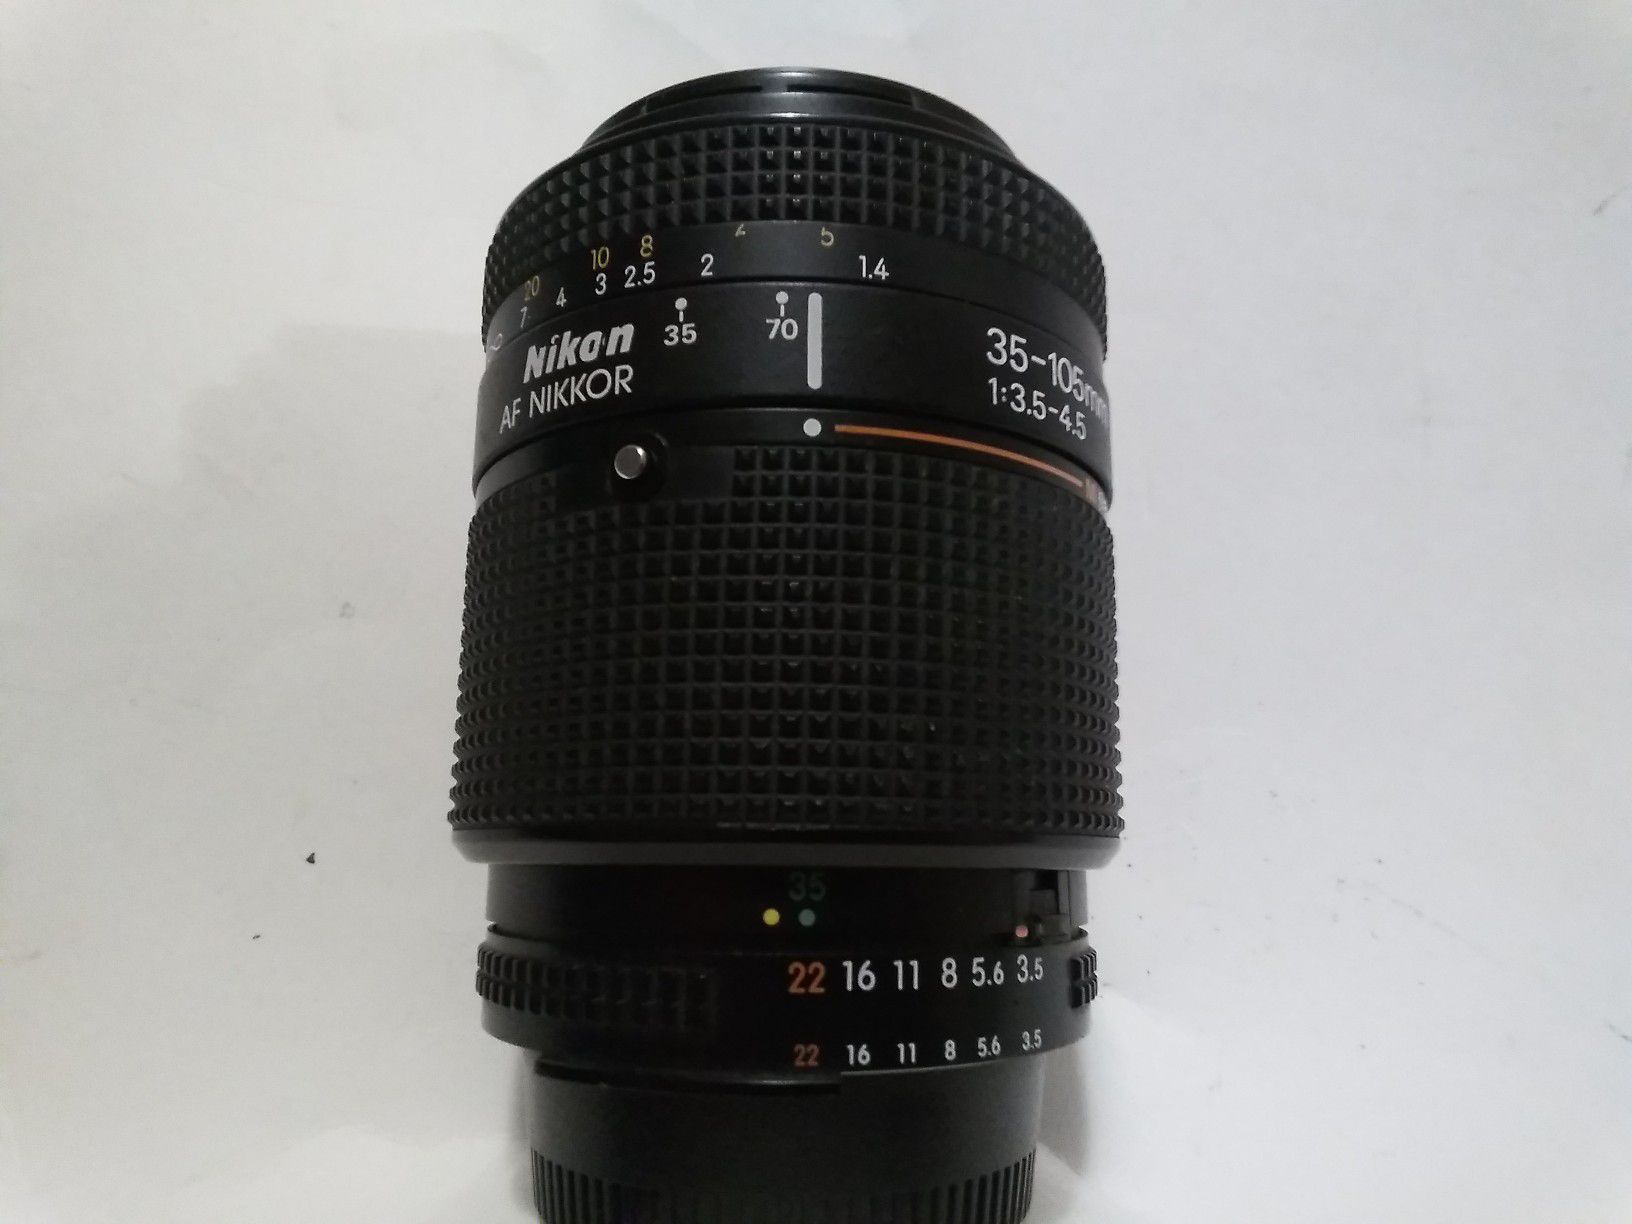 Nikon AF Nikkor 35-105mm f/3.5-4.5 Camera Lens